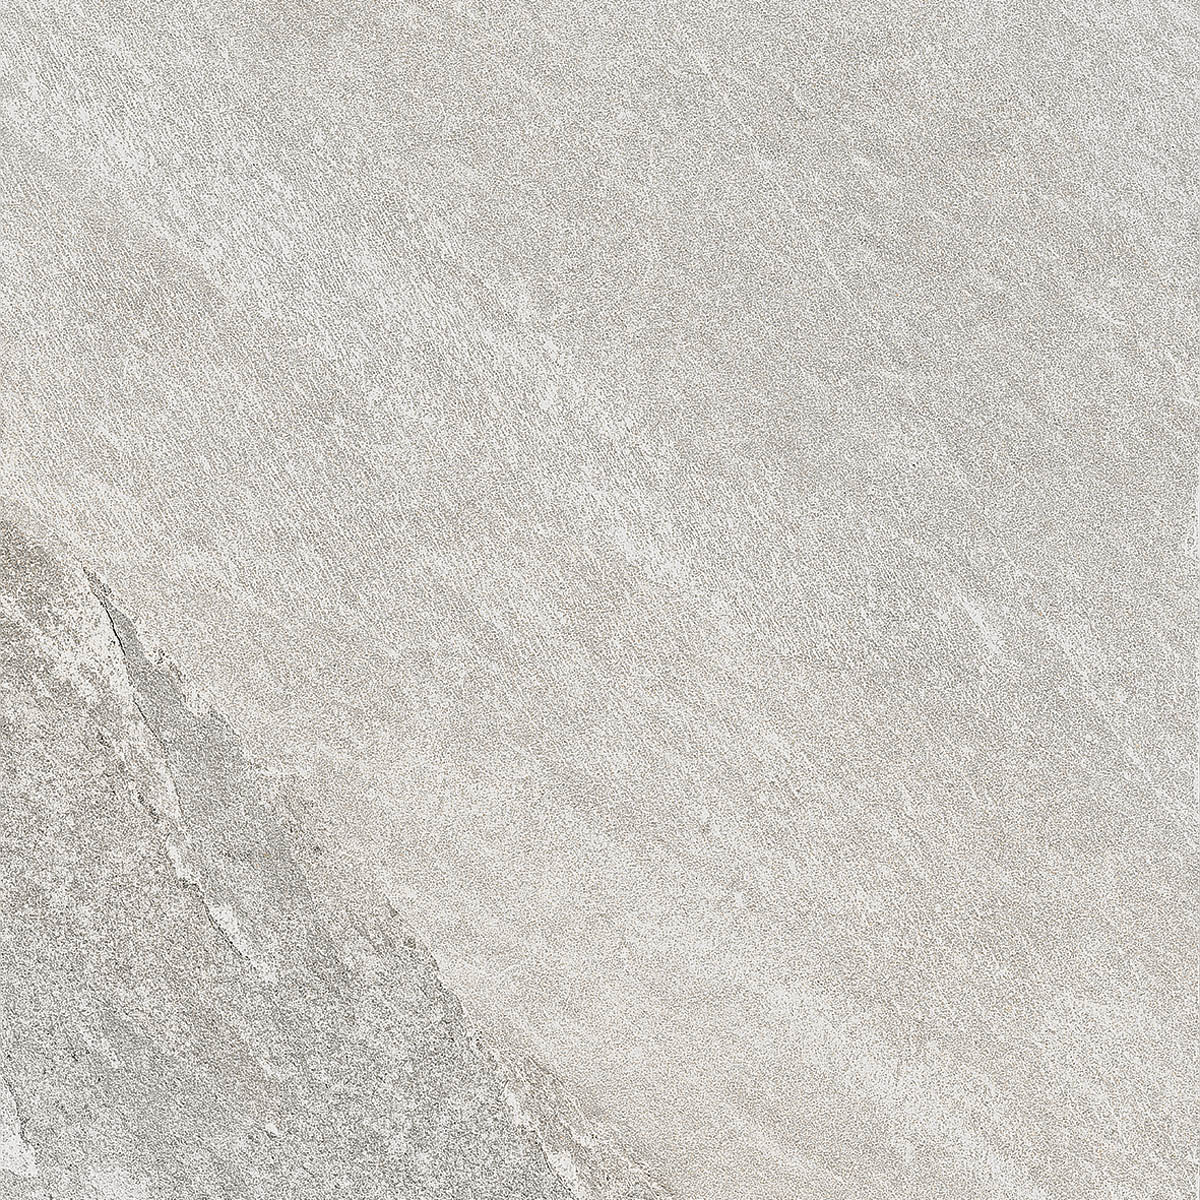 Imola X-Rock Bianco Natural Strutturato Matt Outdoor Bianco 157045 matt natur strukturiert 60x60cm rektifiziert 10mm